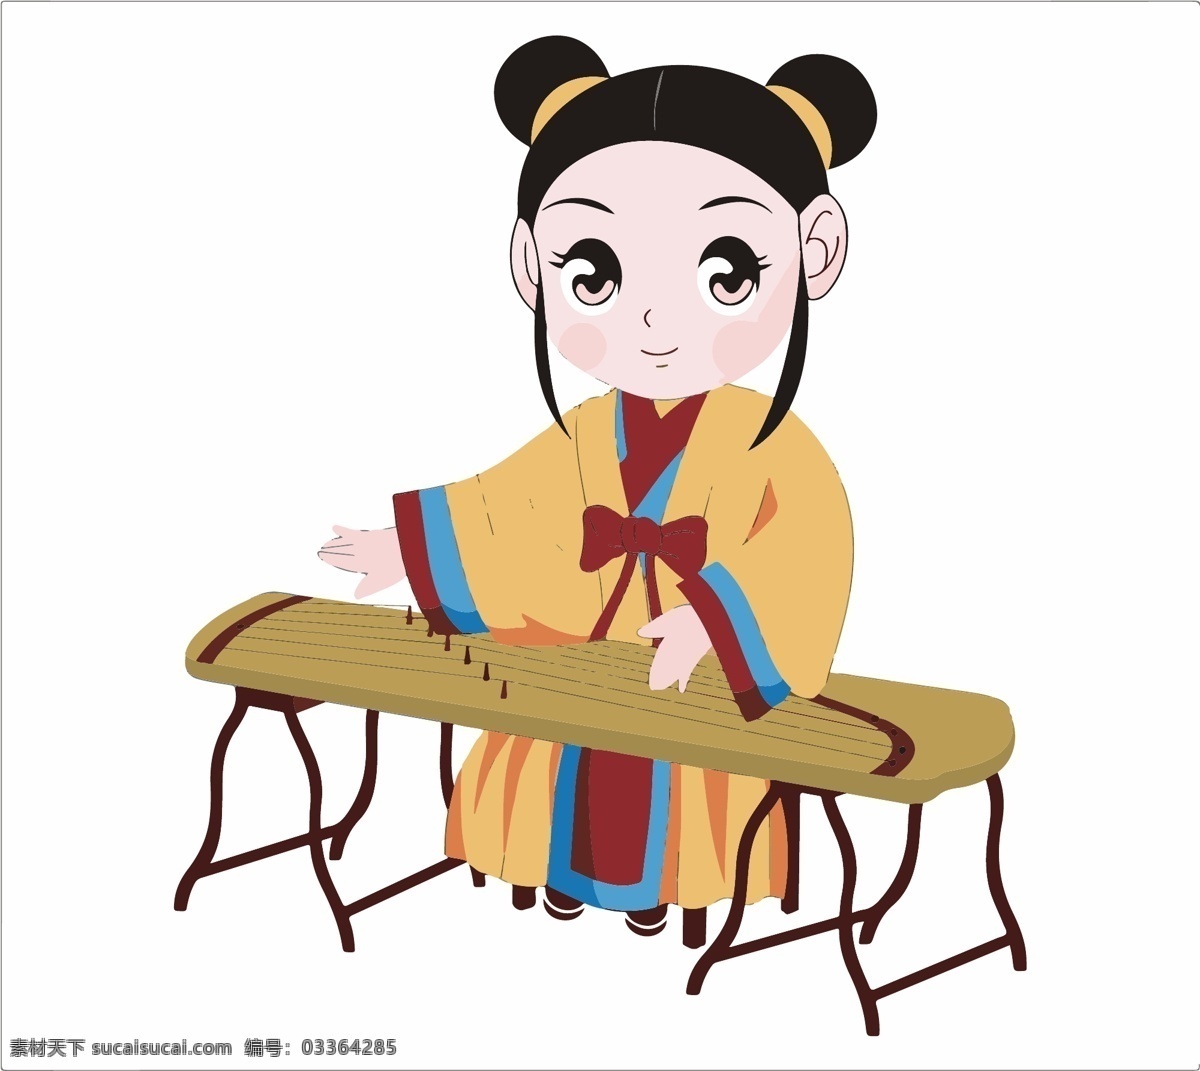 古琴 琴女 抚琴 弹琴 少女 美女 中国风 传统 中国文化 彩图 矢量 白色